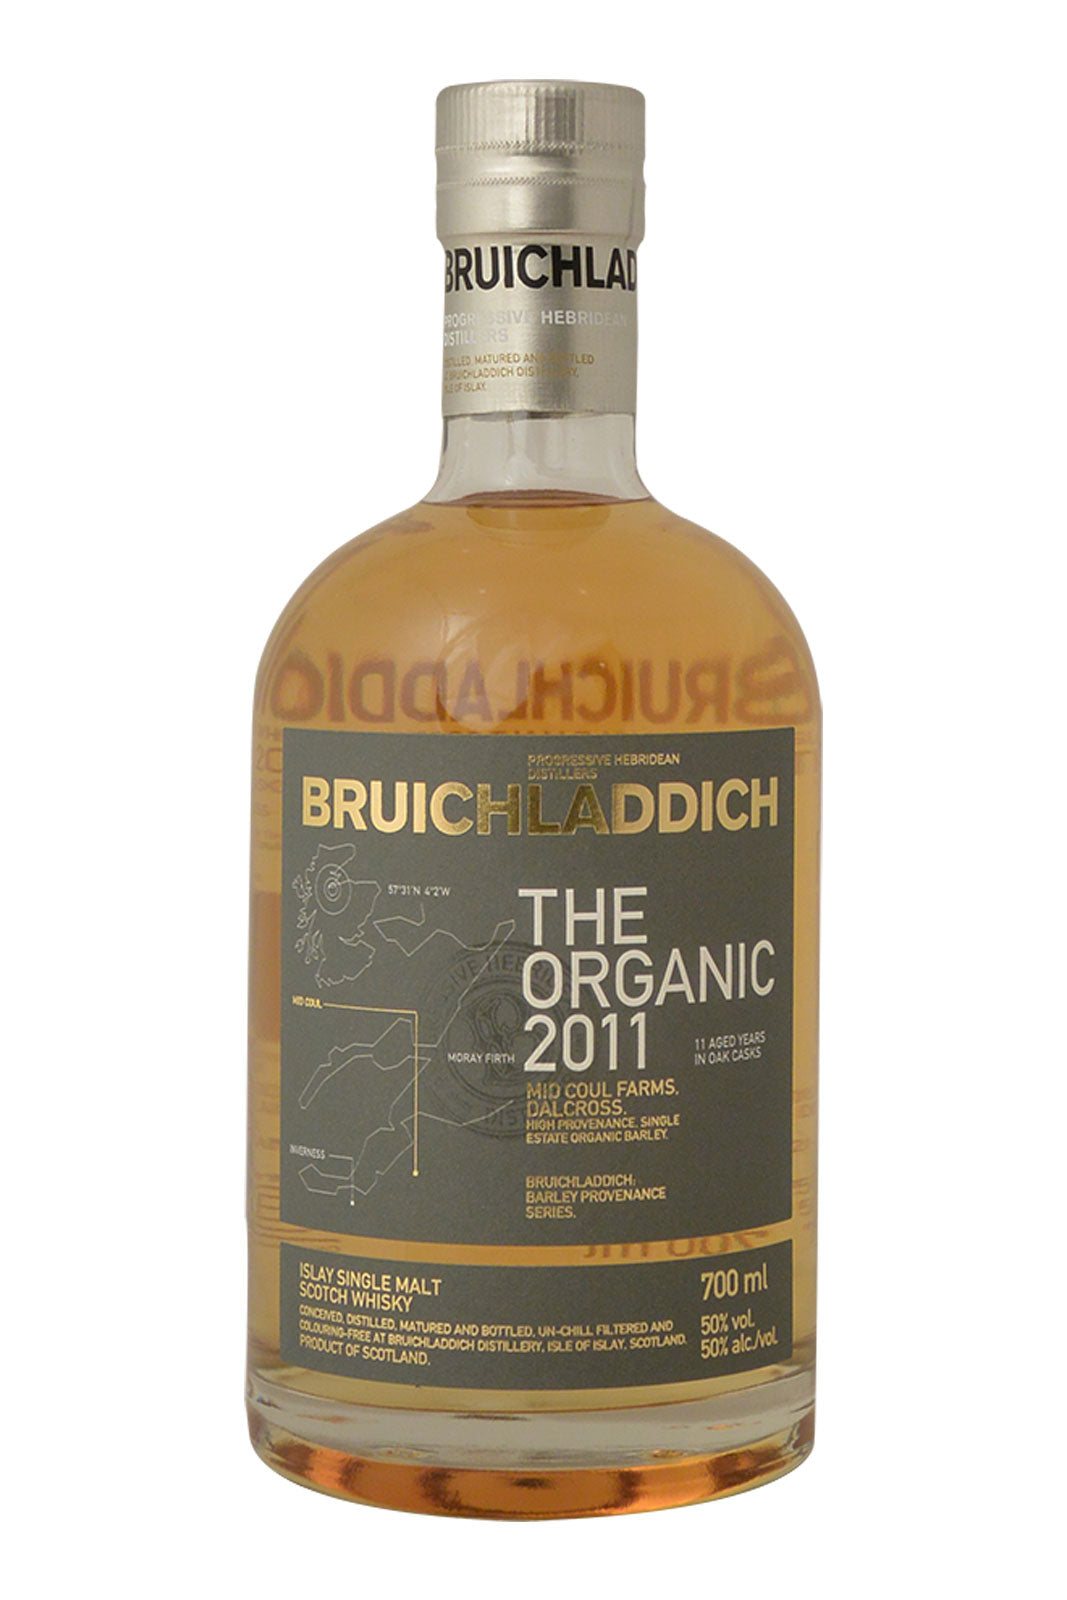 Bruichladdich The Organic 2011